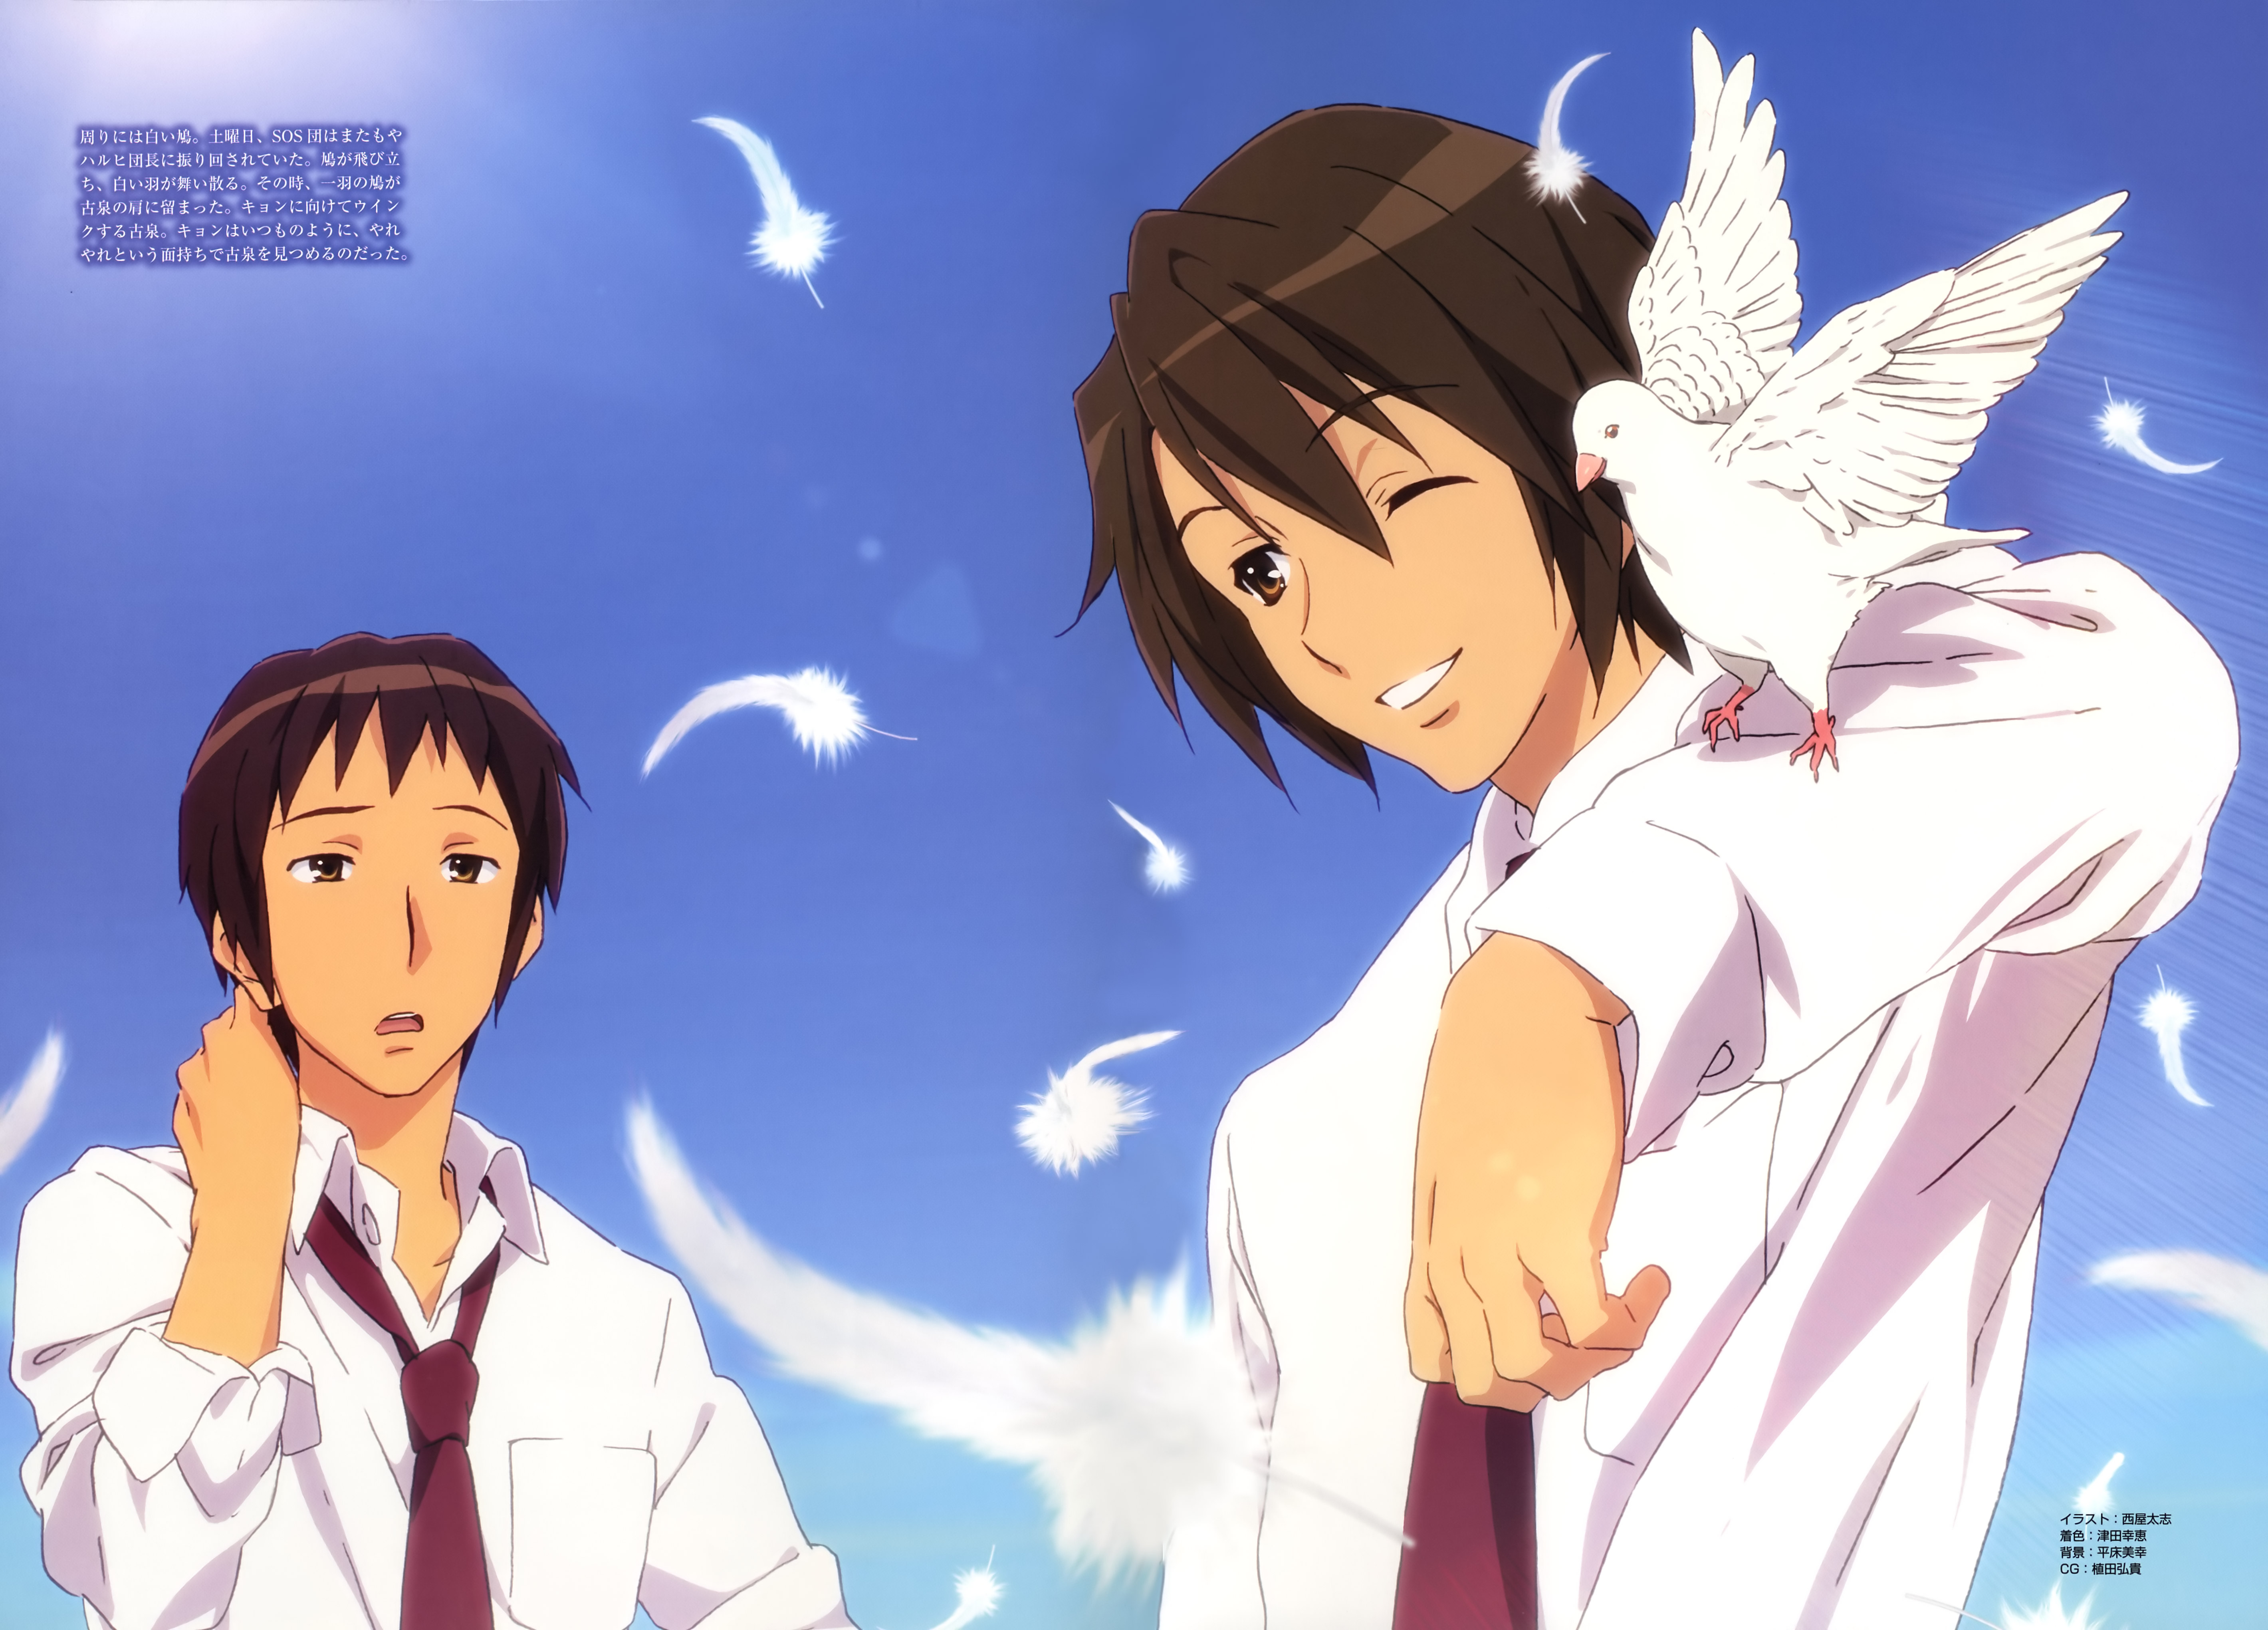 Free download wallpaper Anime, The Melancholy Of Haruhi Suzumiya, Itsuki Koizumi, Kyon (Haruhi) on your PC desktop